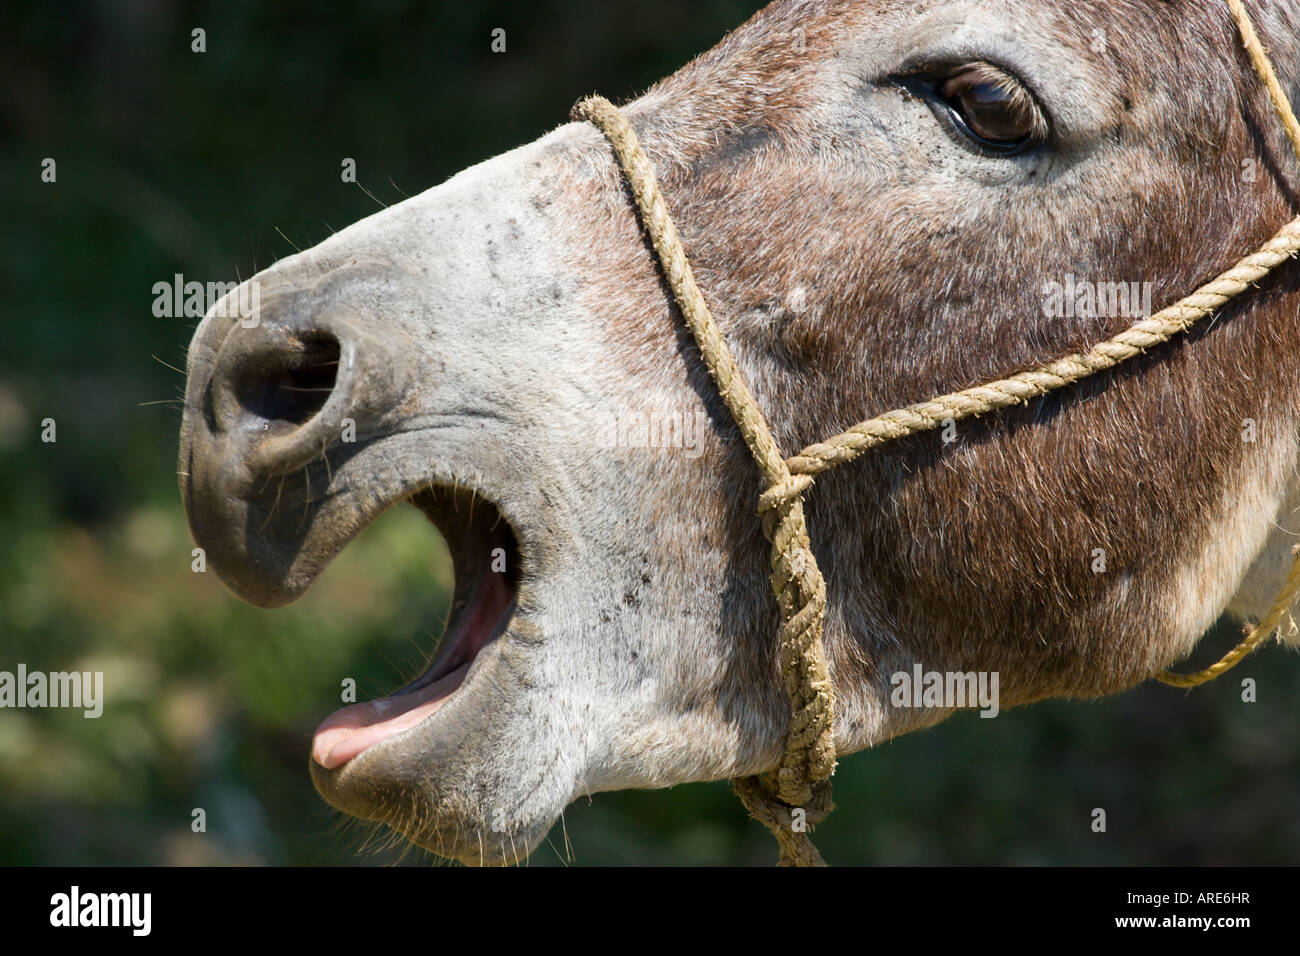 donkey braying Stock Photo